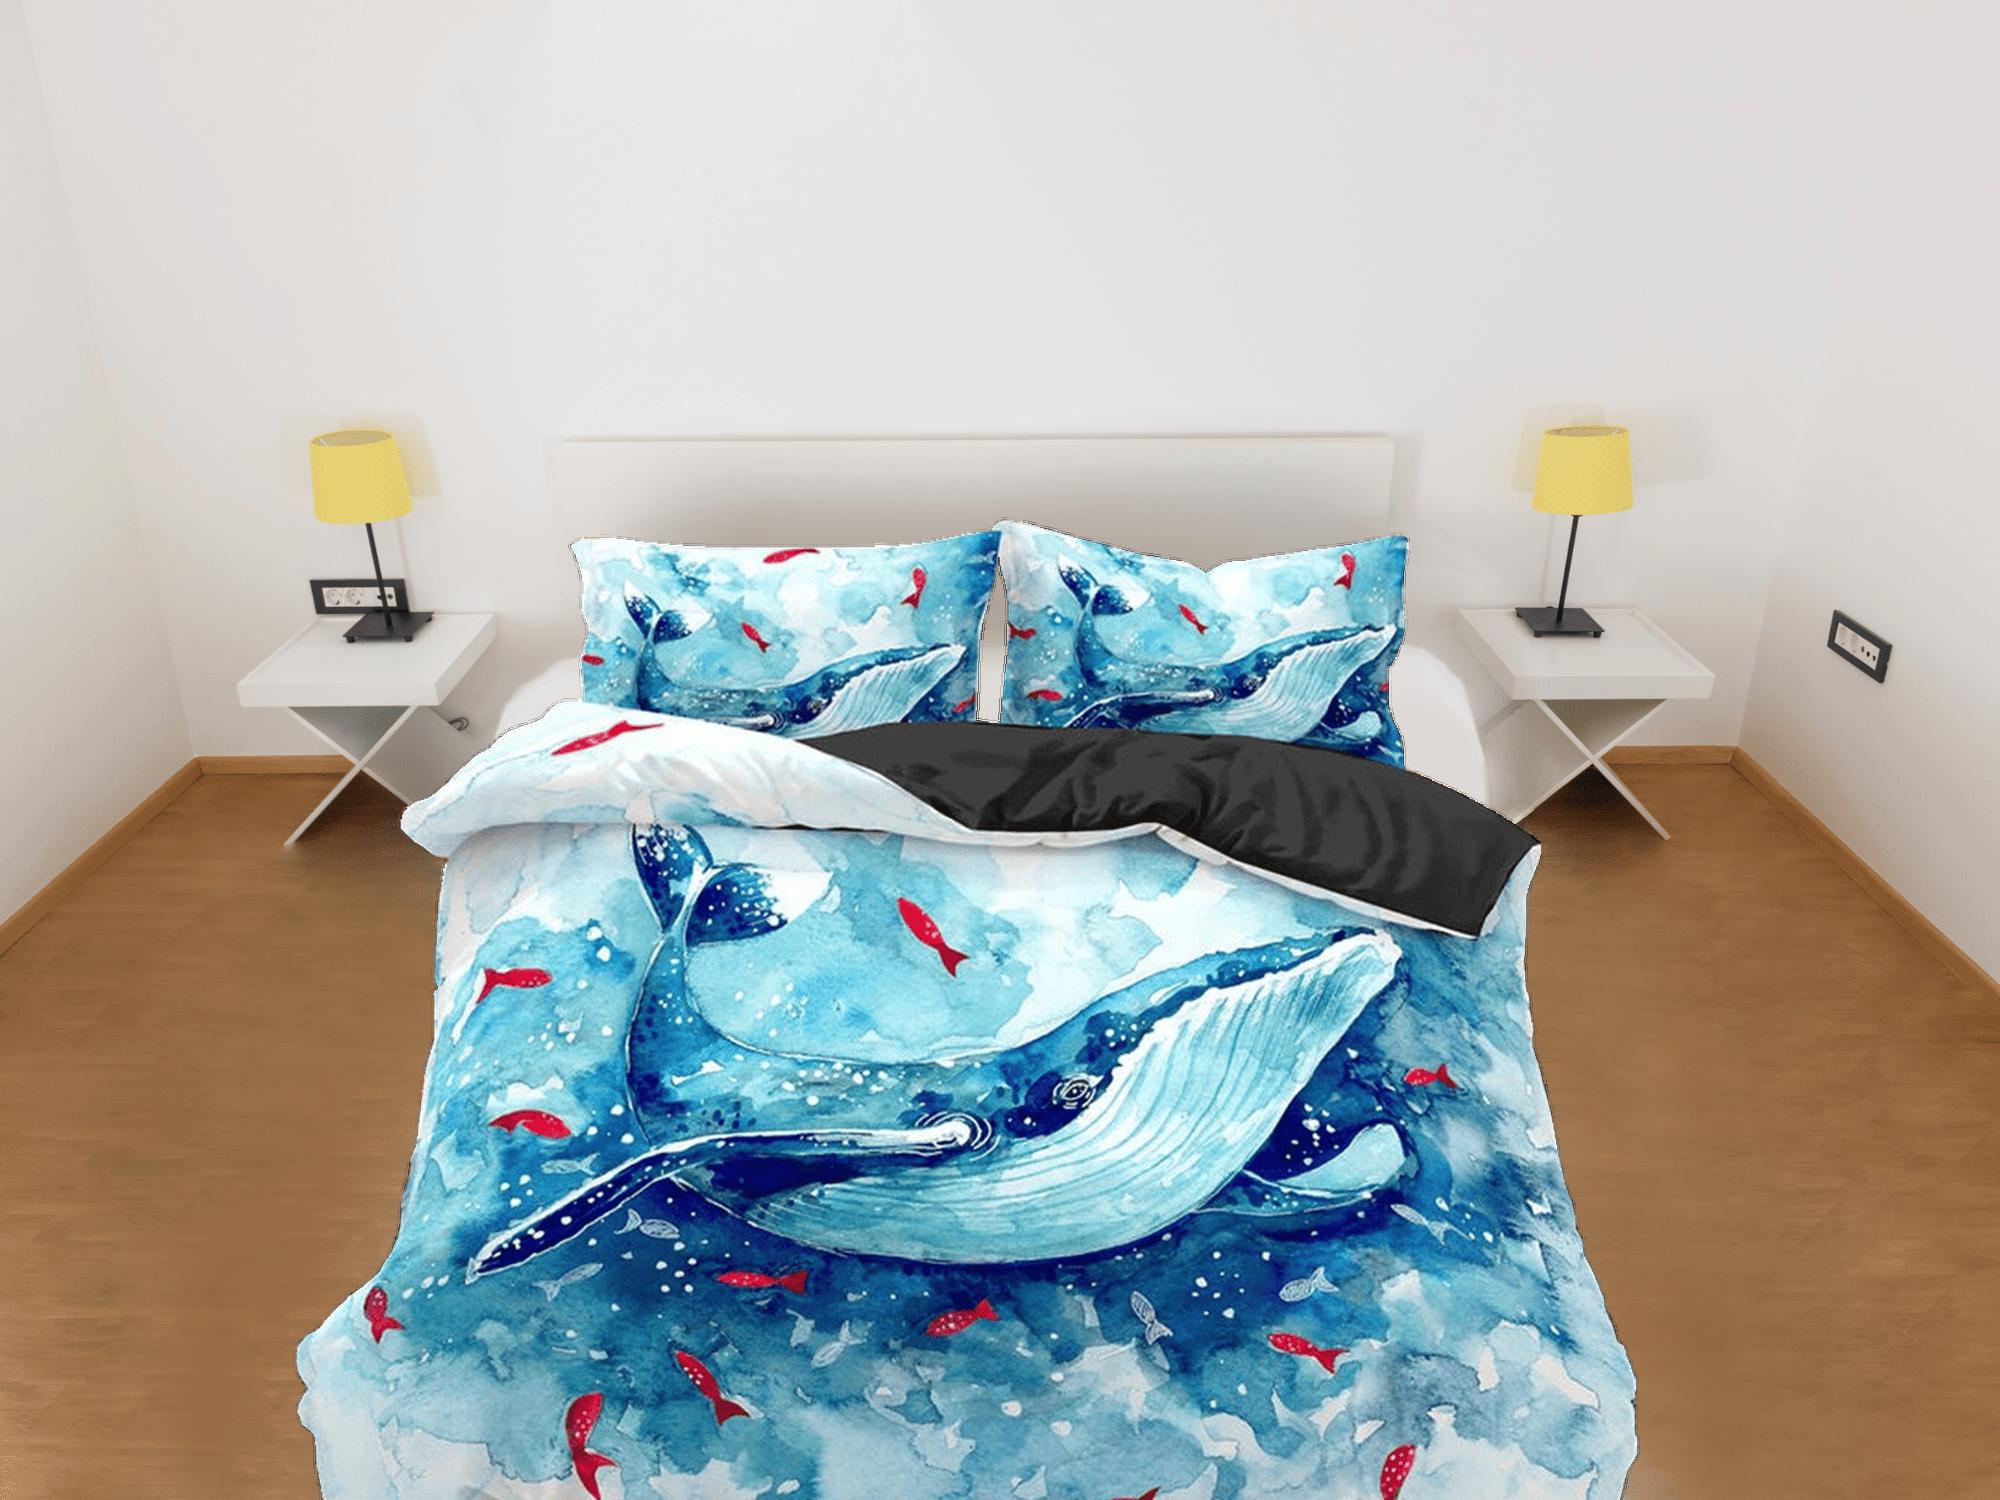 daintyduvet Dolphin painting bedding artistic design duvet cover, ocean blush decor bottle nose dolphin bedding set full king queen twin, dorm bedding